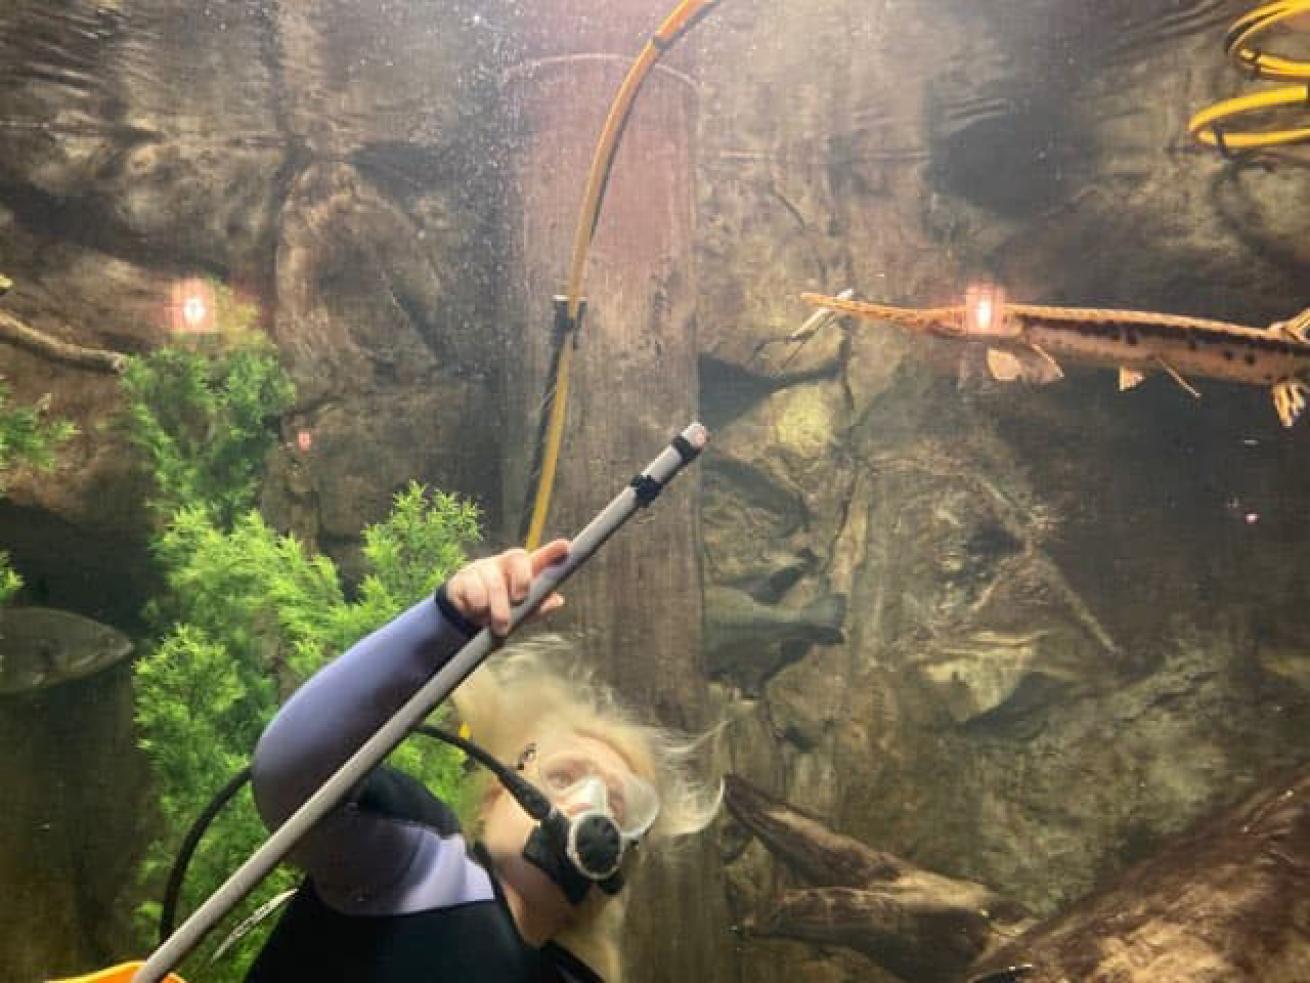 Aquarium Diver Feeds Fish